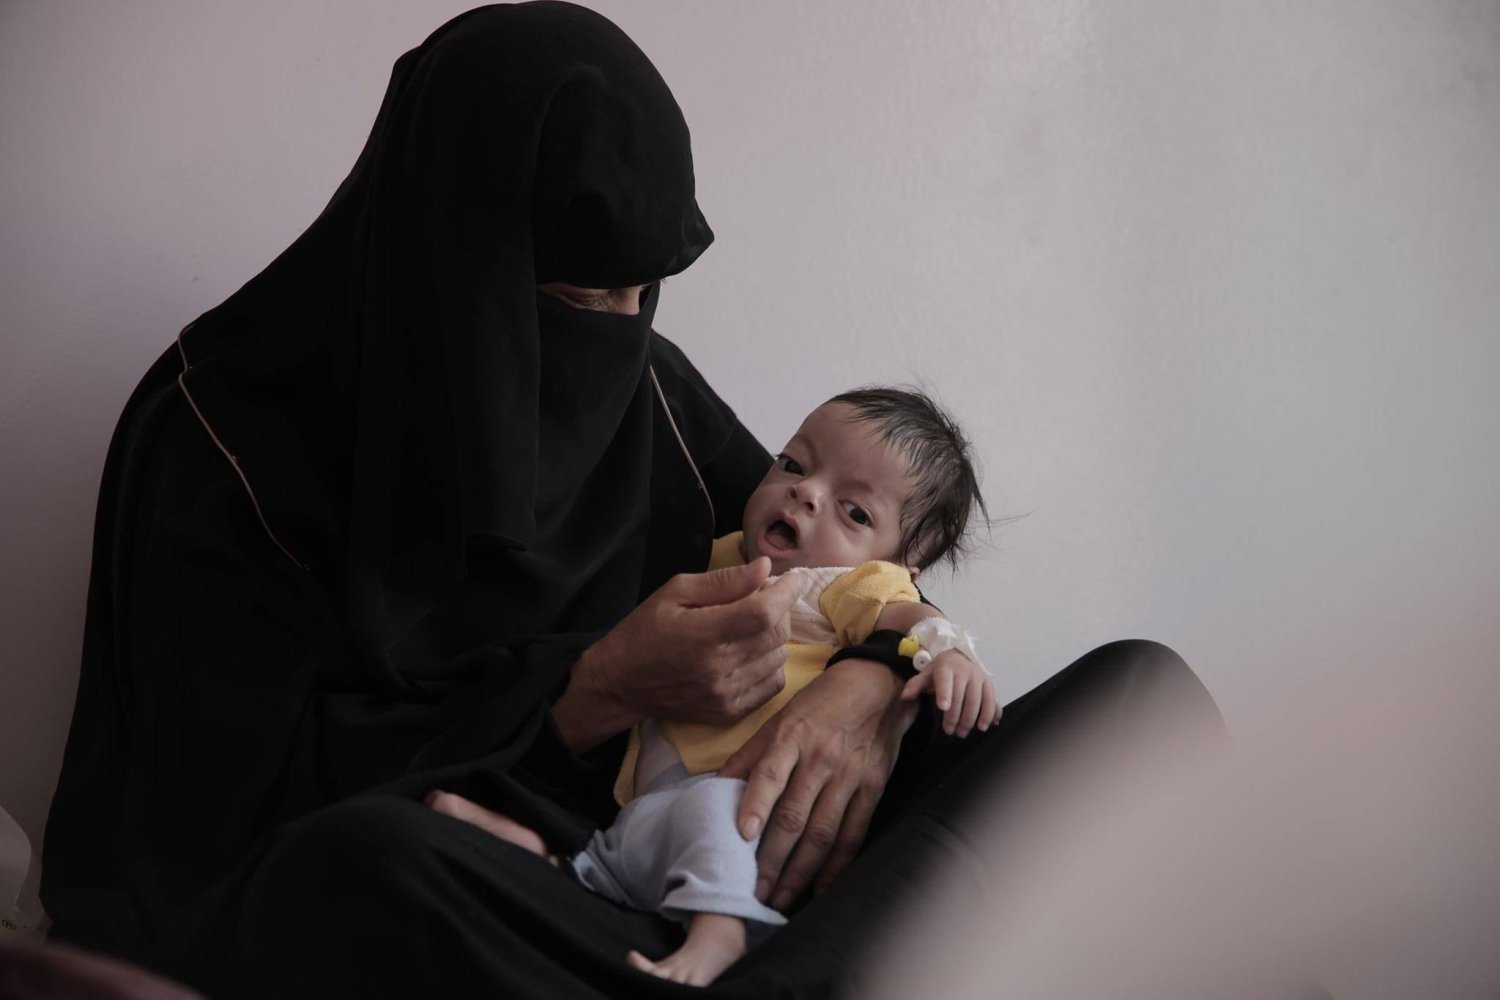 سوء التغذية بين الأطفال اليمنيين ارتفع وانتشرت الأمراض المعدية على نطاق واسع (الأمم المتحدة)